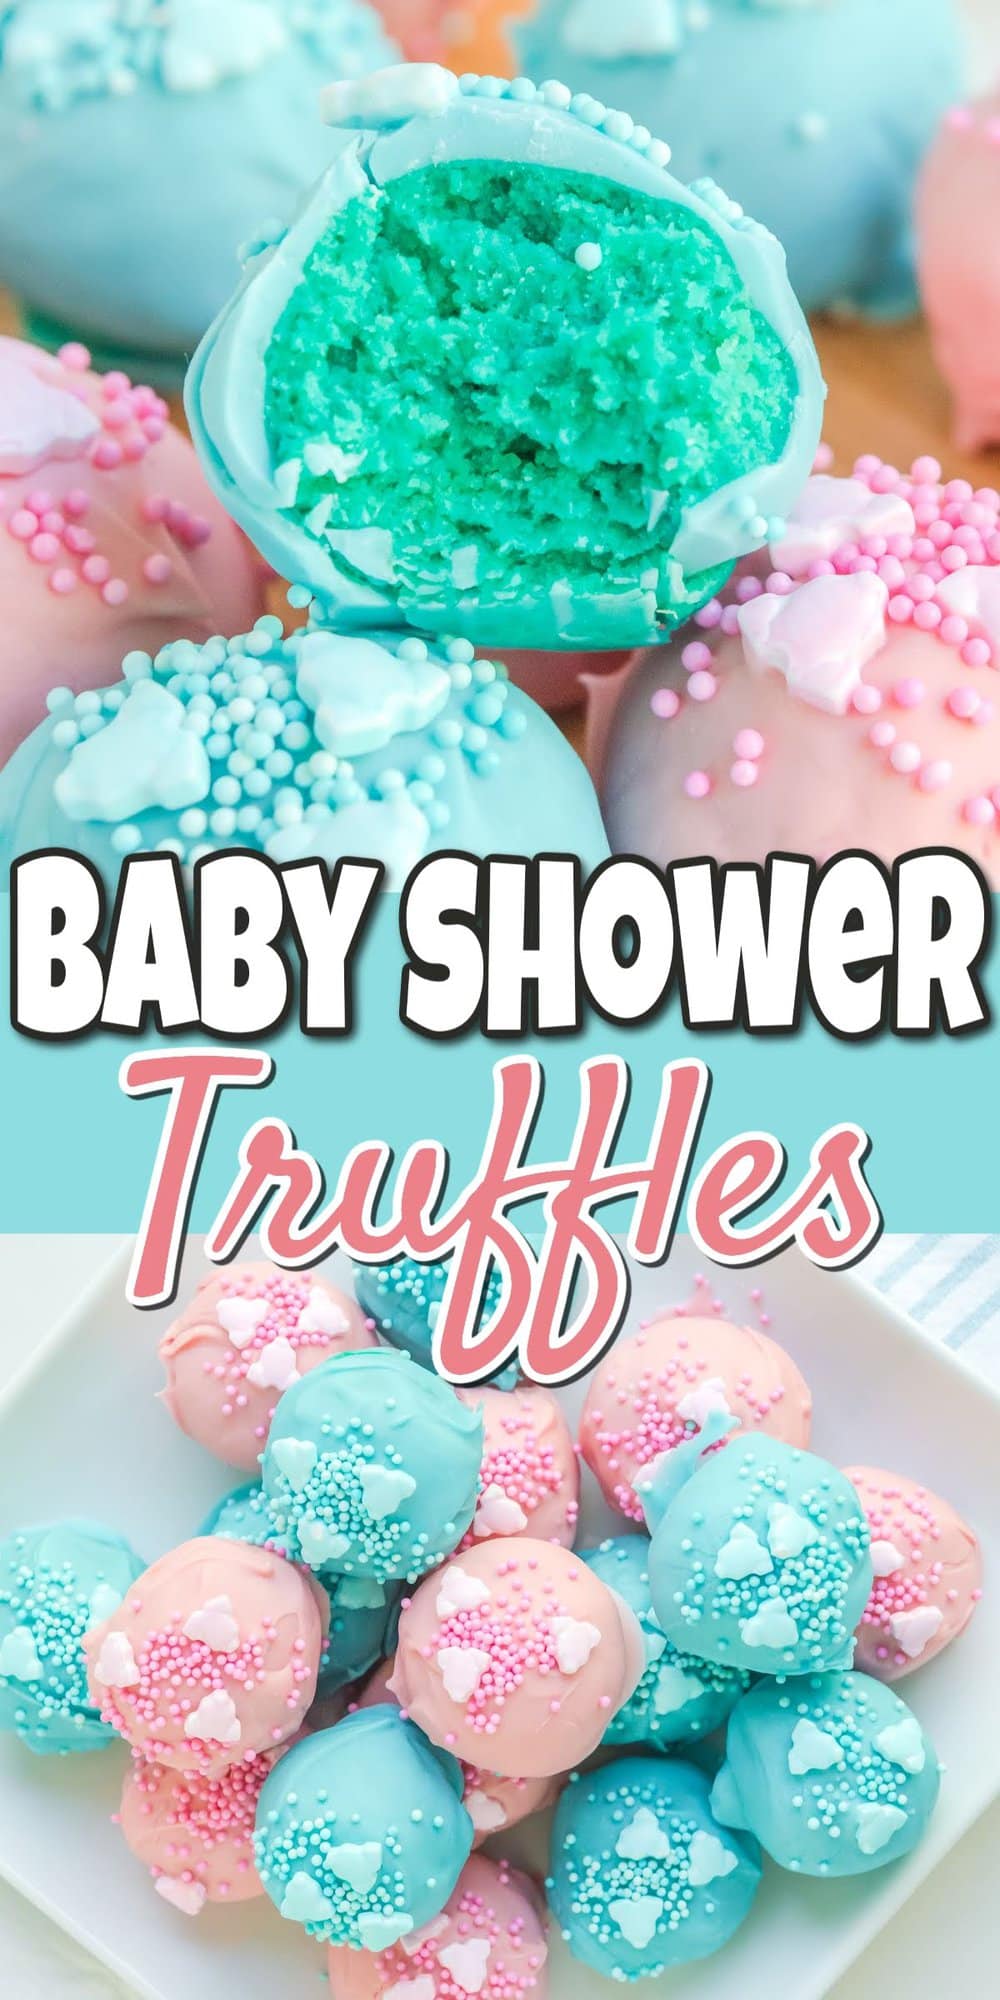 Baby Shower Truffles